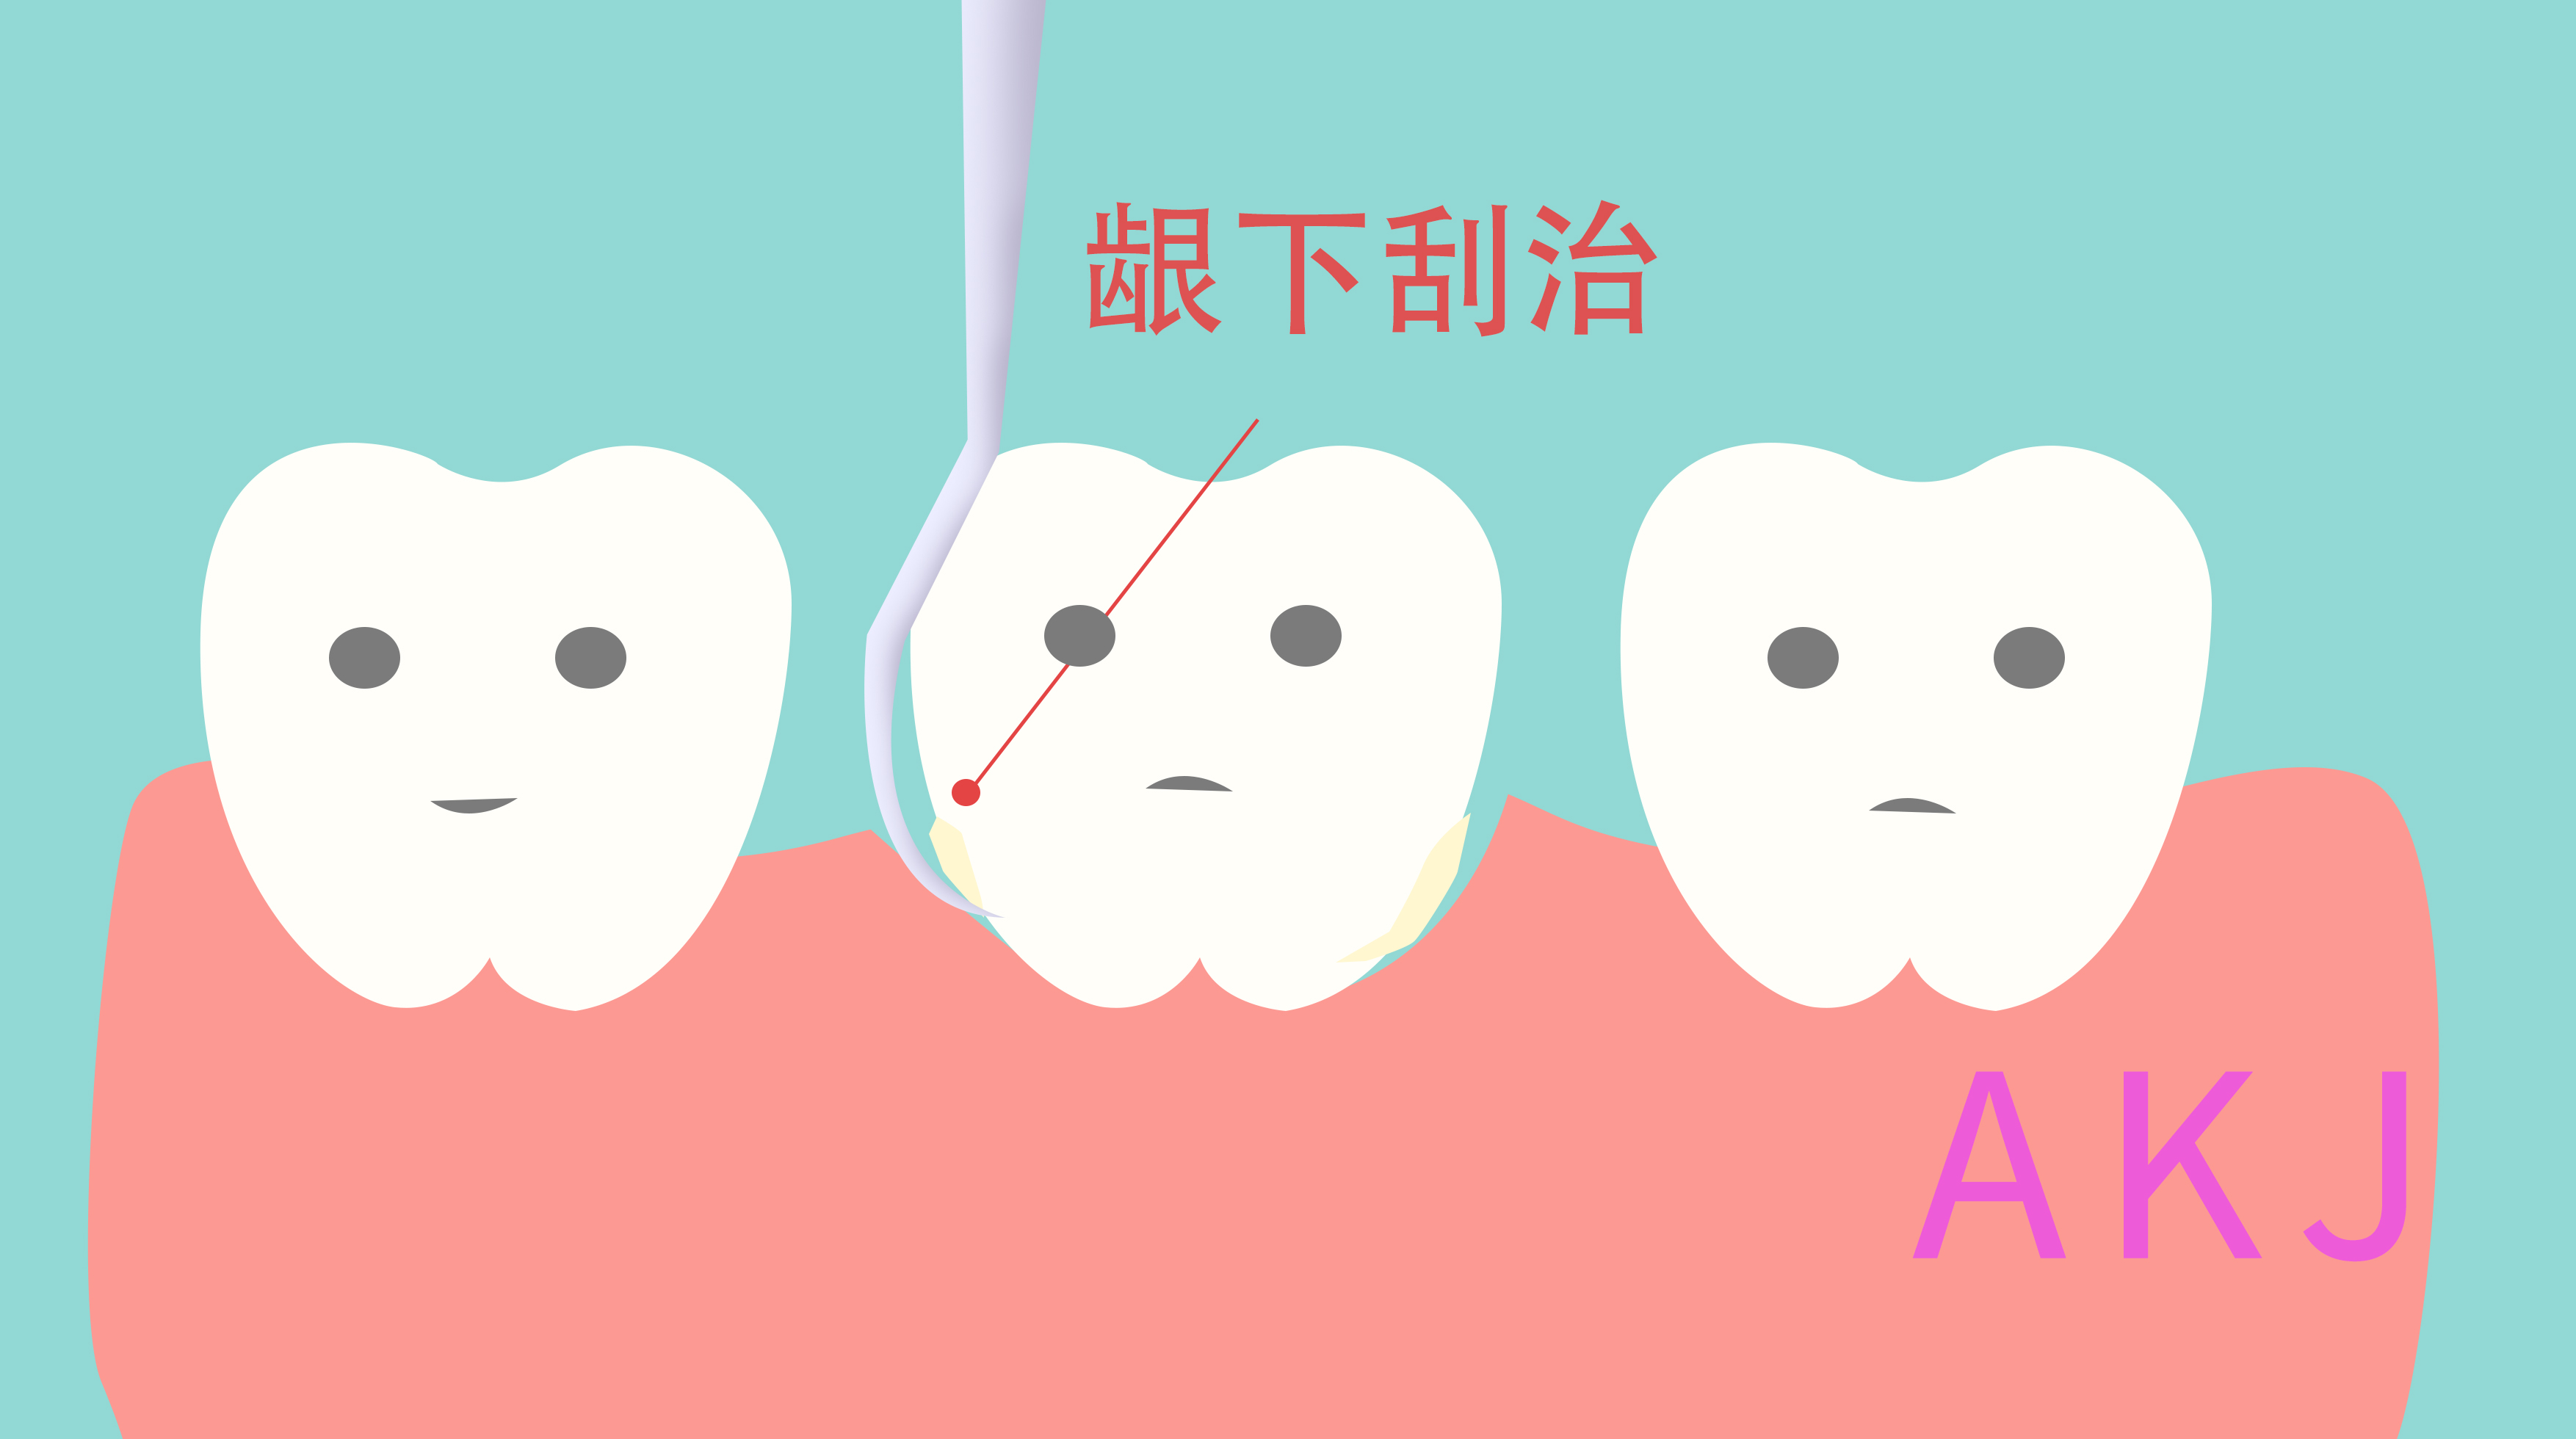 牙周炎治疗的龈下刮治和普通洗牙有何异同？ - 知乎